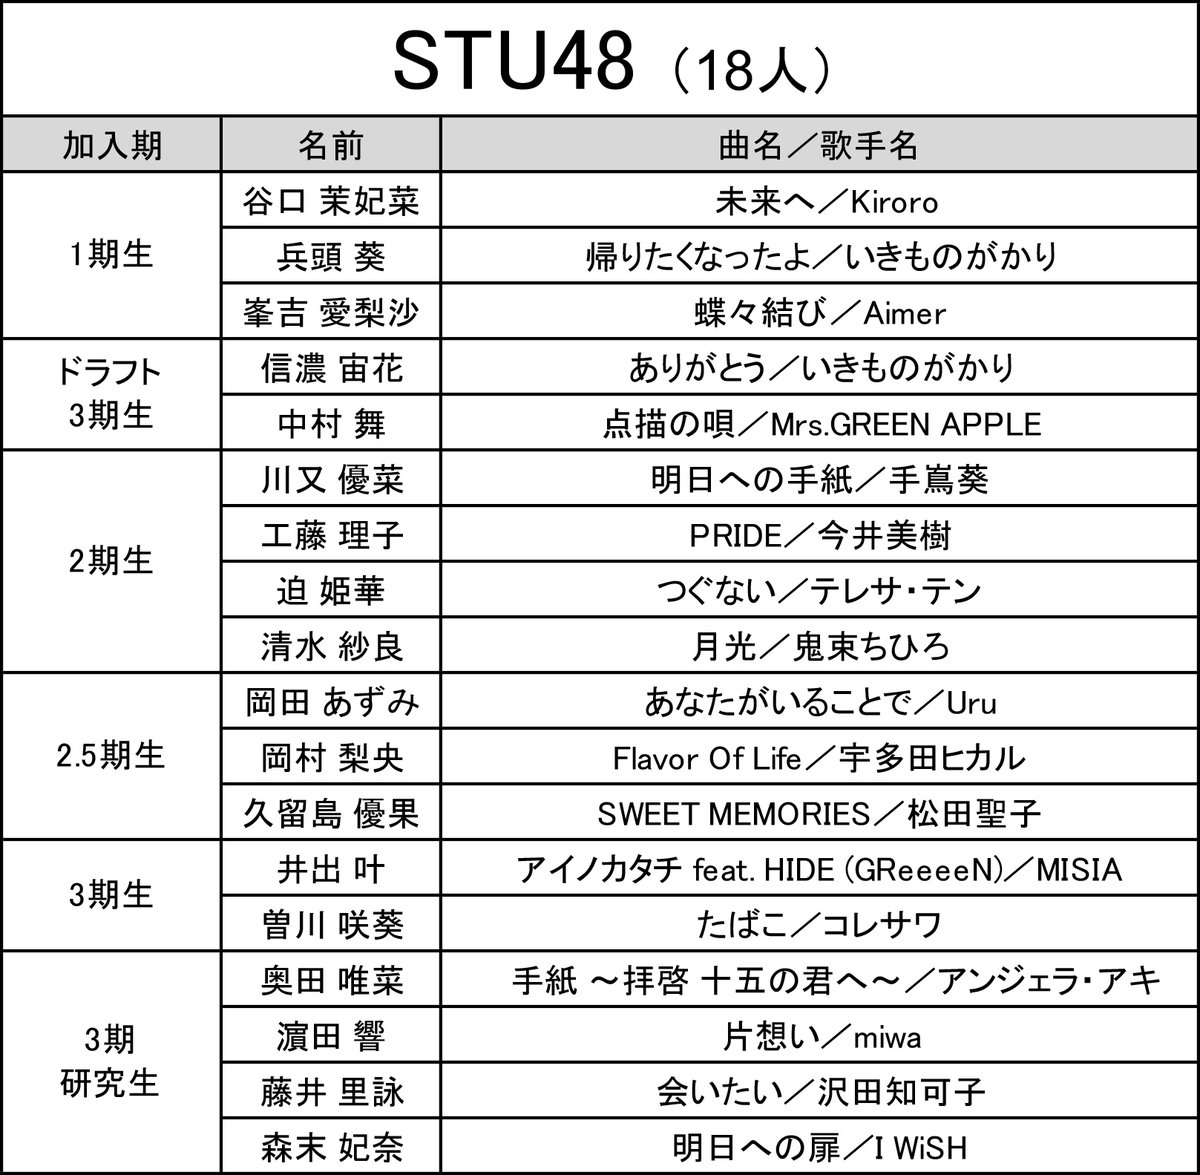 ＜予選歌唱曲⑥＞ 第6回 #AKB48歌唱力No1決定戦 #STU48 の予選歌唱曲はこちらです。 ■予選生放送 TBSチャンネル1 5月29日(水)午後9時〜 5月30日(木)午後9時〜 →tbs.co.jp/tbs-ch/item/o2…